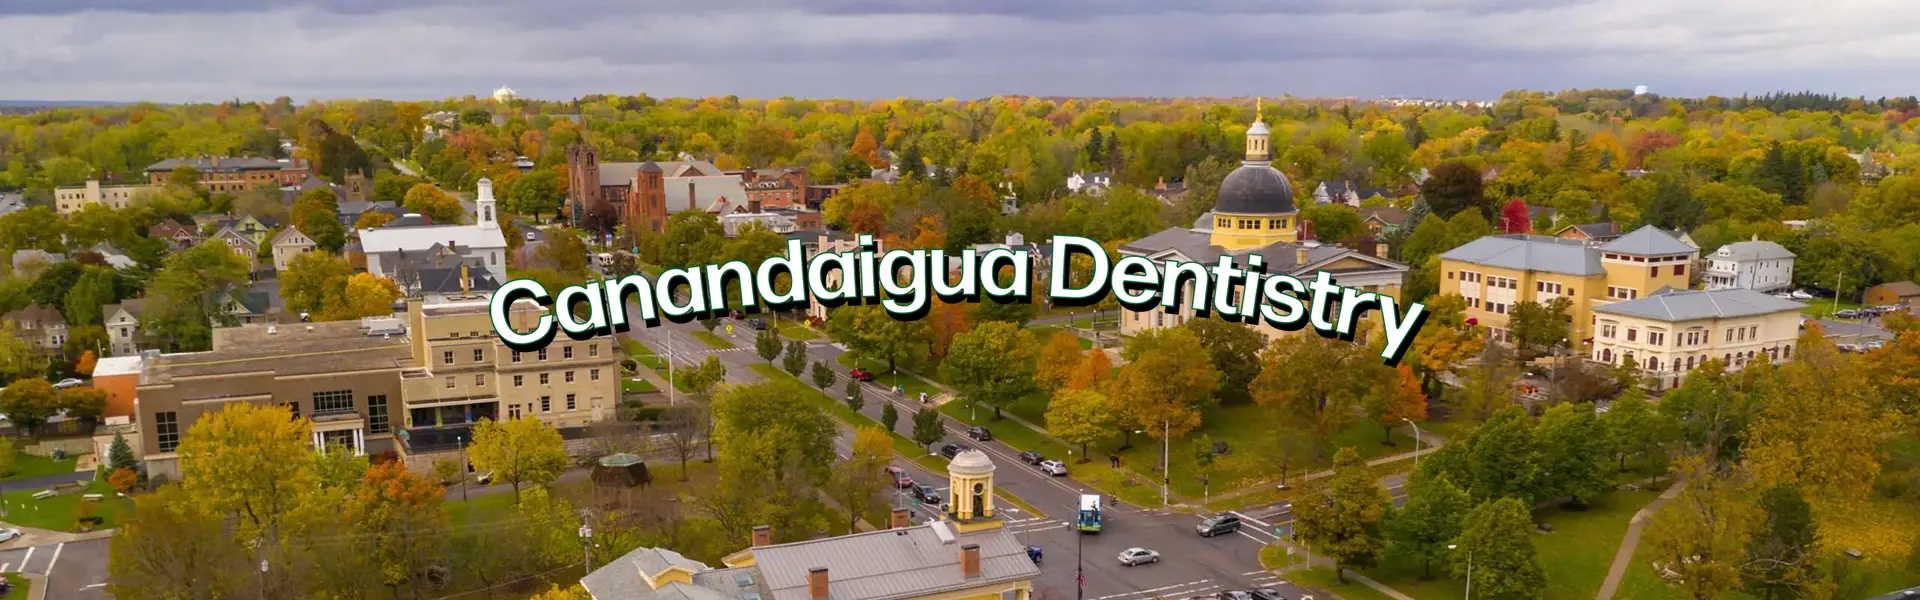 Canandaigua Dentistry